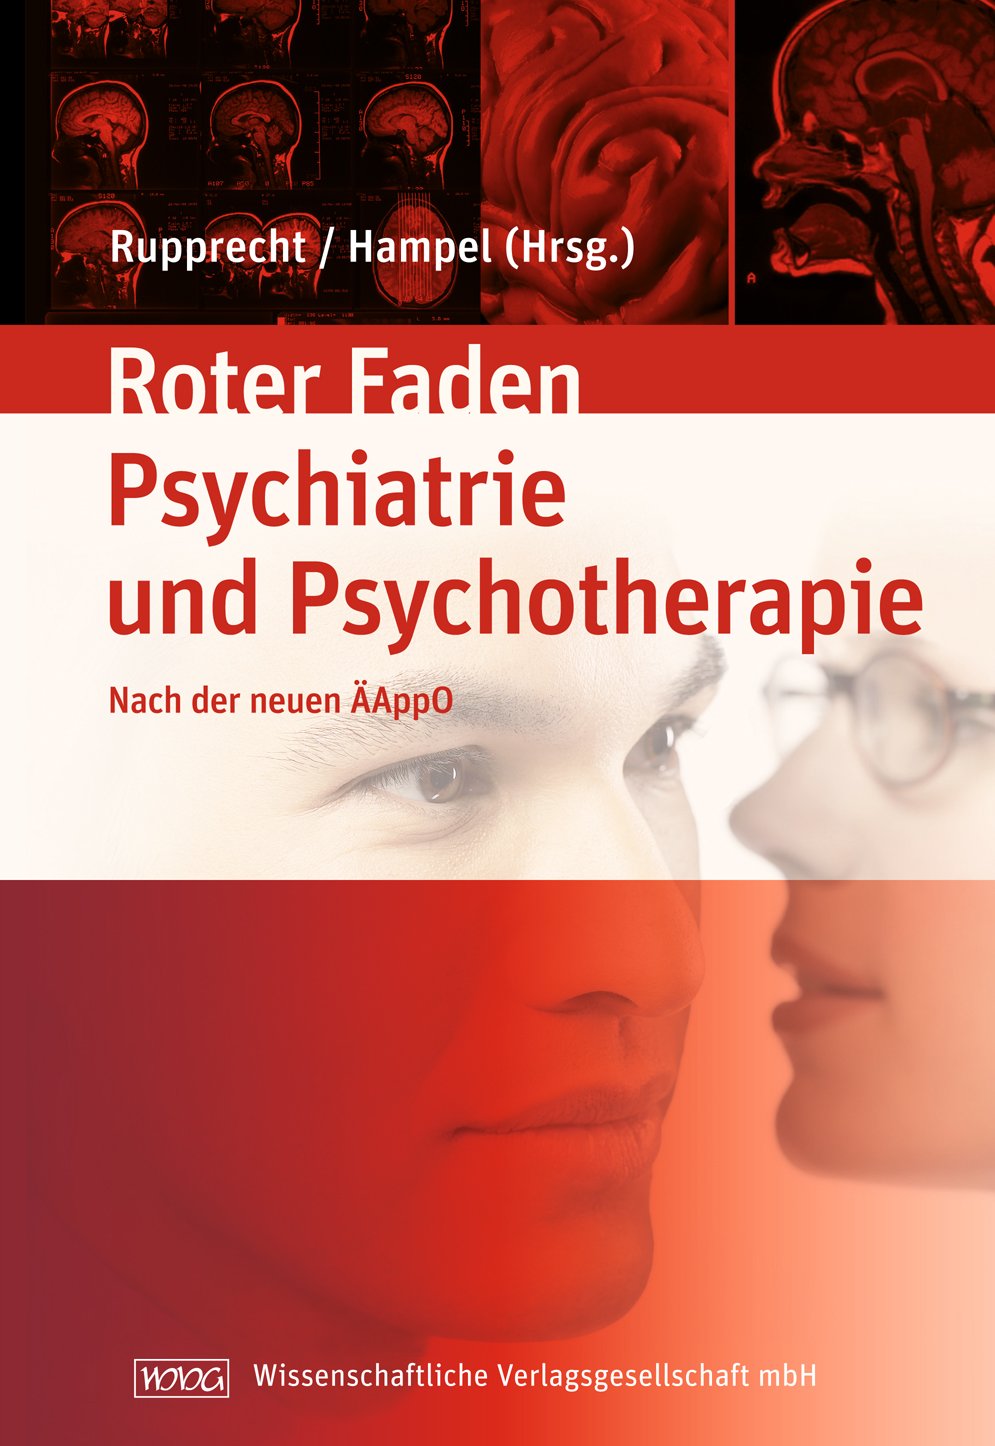 Lehrbuch der Psychiatrie und Psychotherapie